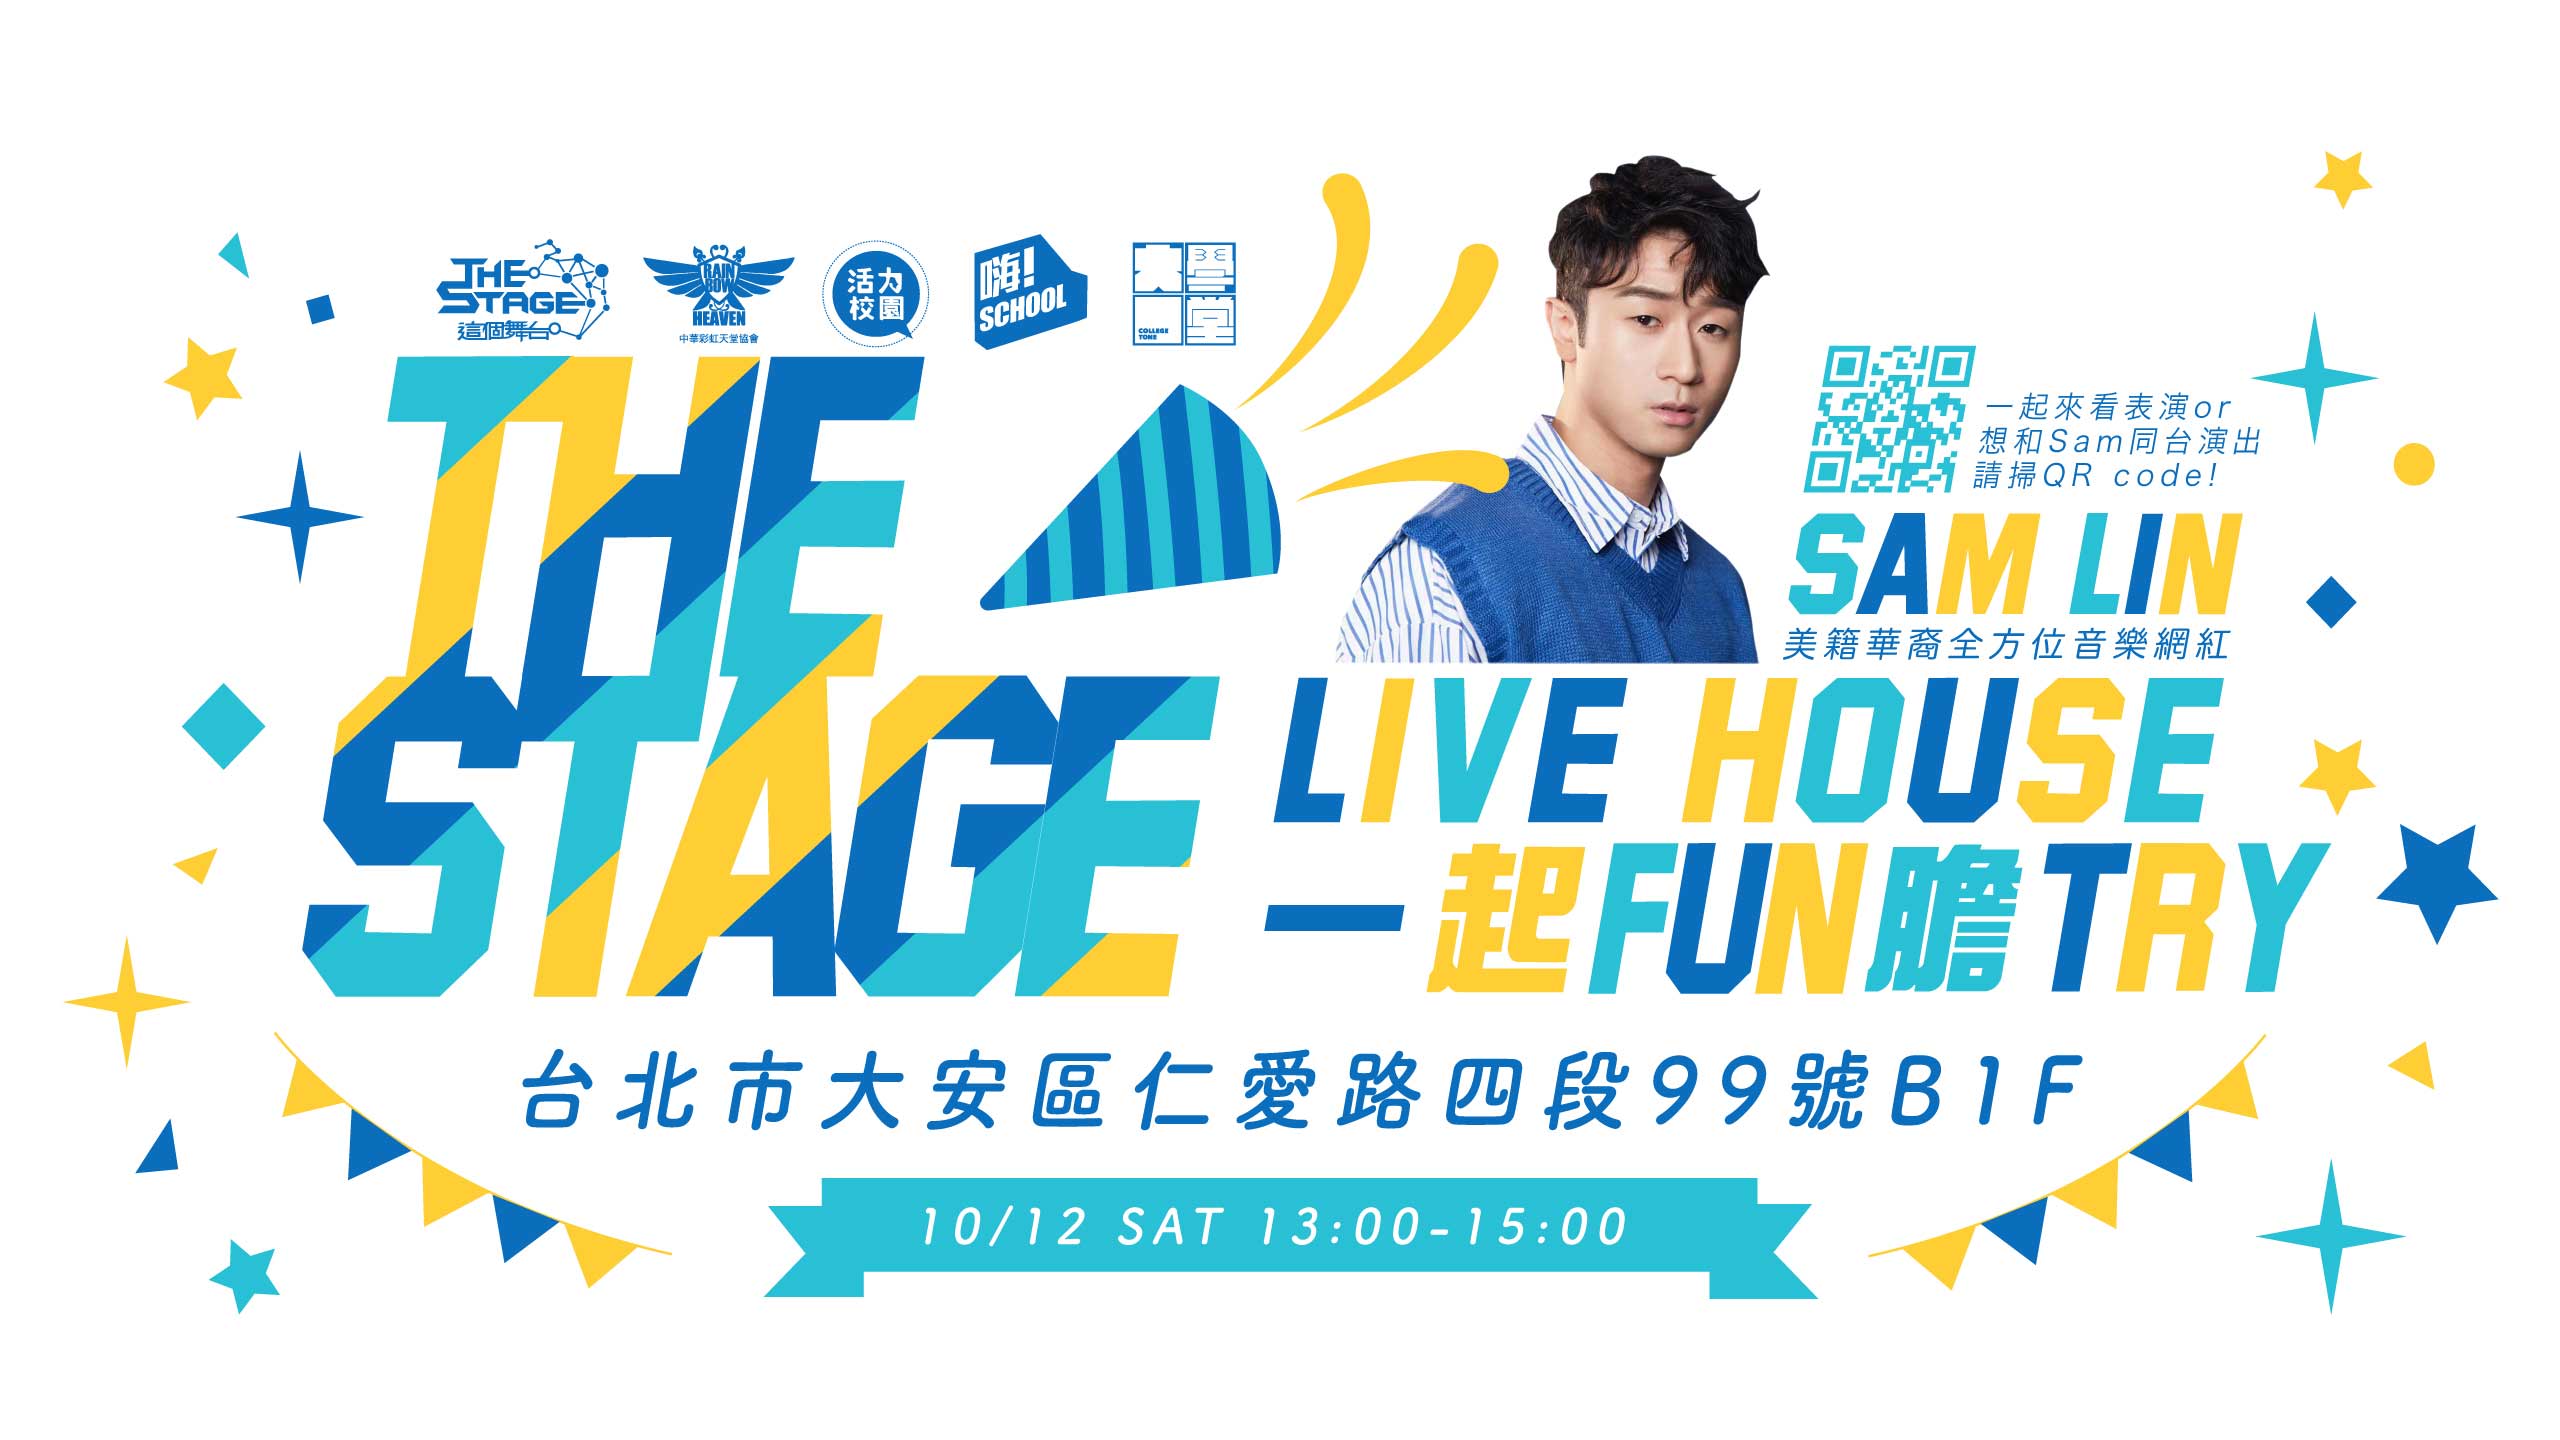 【資訊公告】10/12 The Stage 新創藝+新媒體 live house